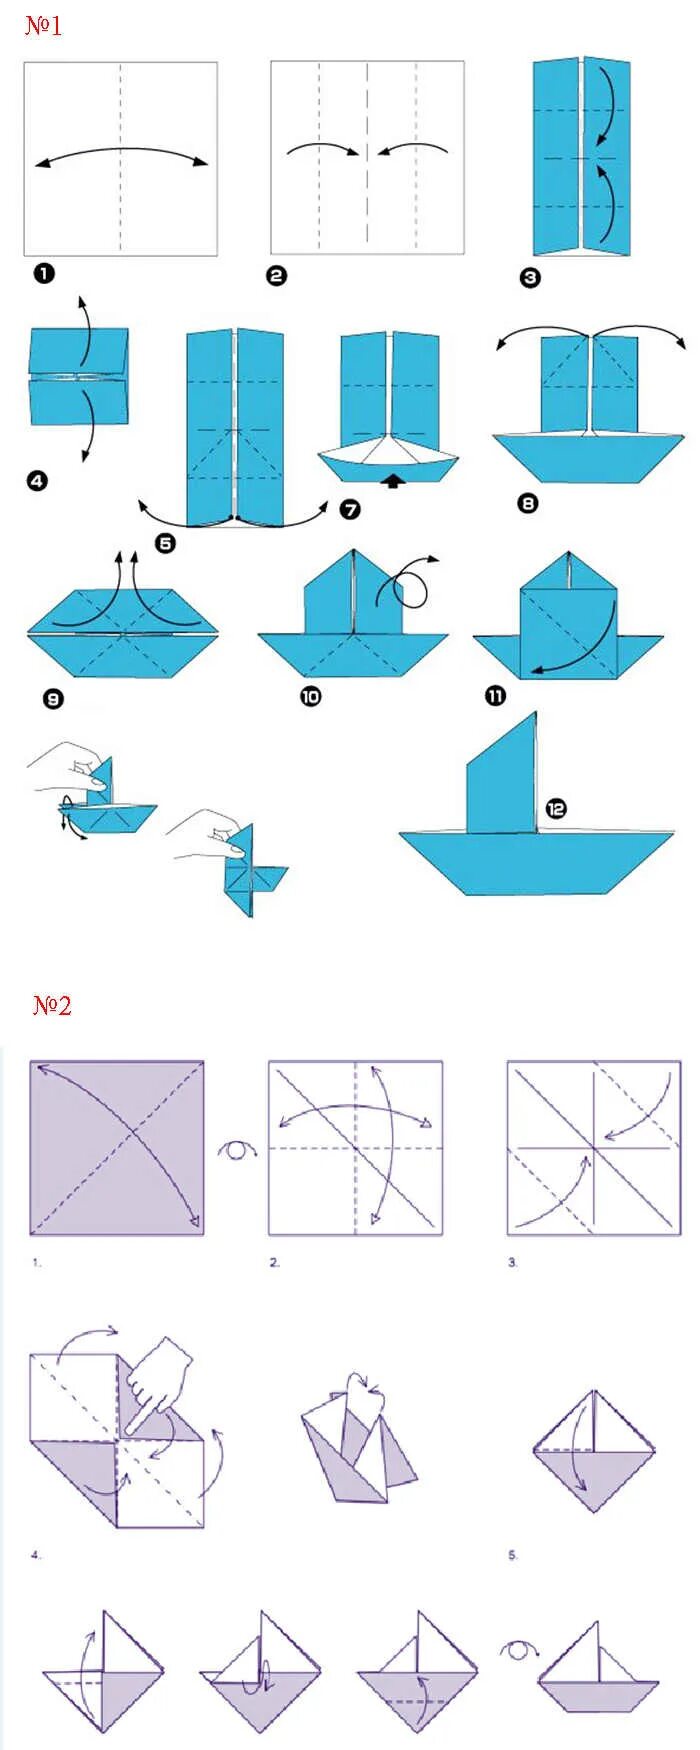 Как делать пароход. Оригами из бумаги схемы для начинающих кораблик. Как сделать кораблик из бумаги пошаговая инструкция. Как делается кораблик из бумаги а4. Оригами из бумаги кораблик схема поэтапно для детей.